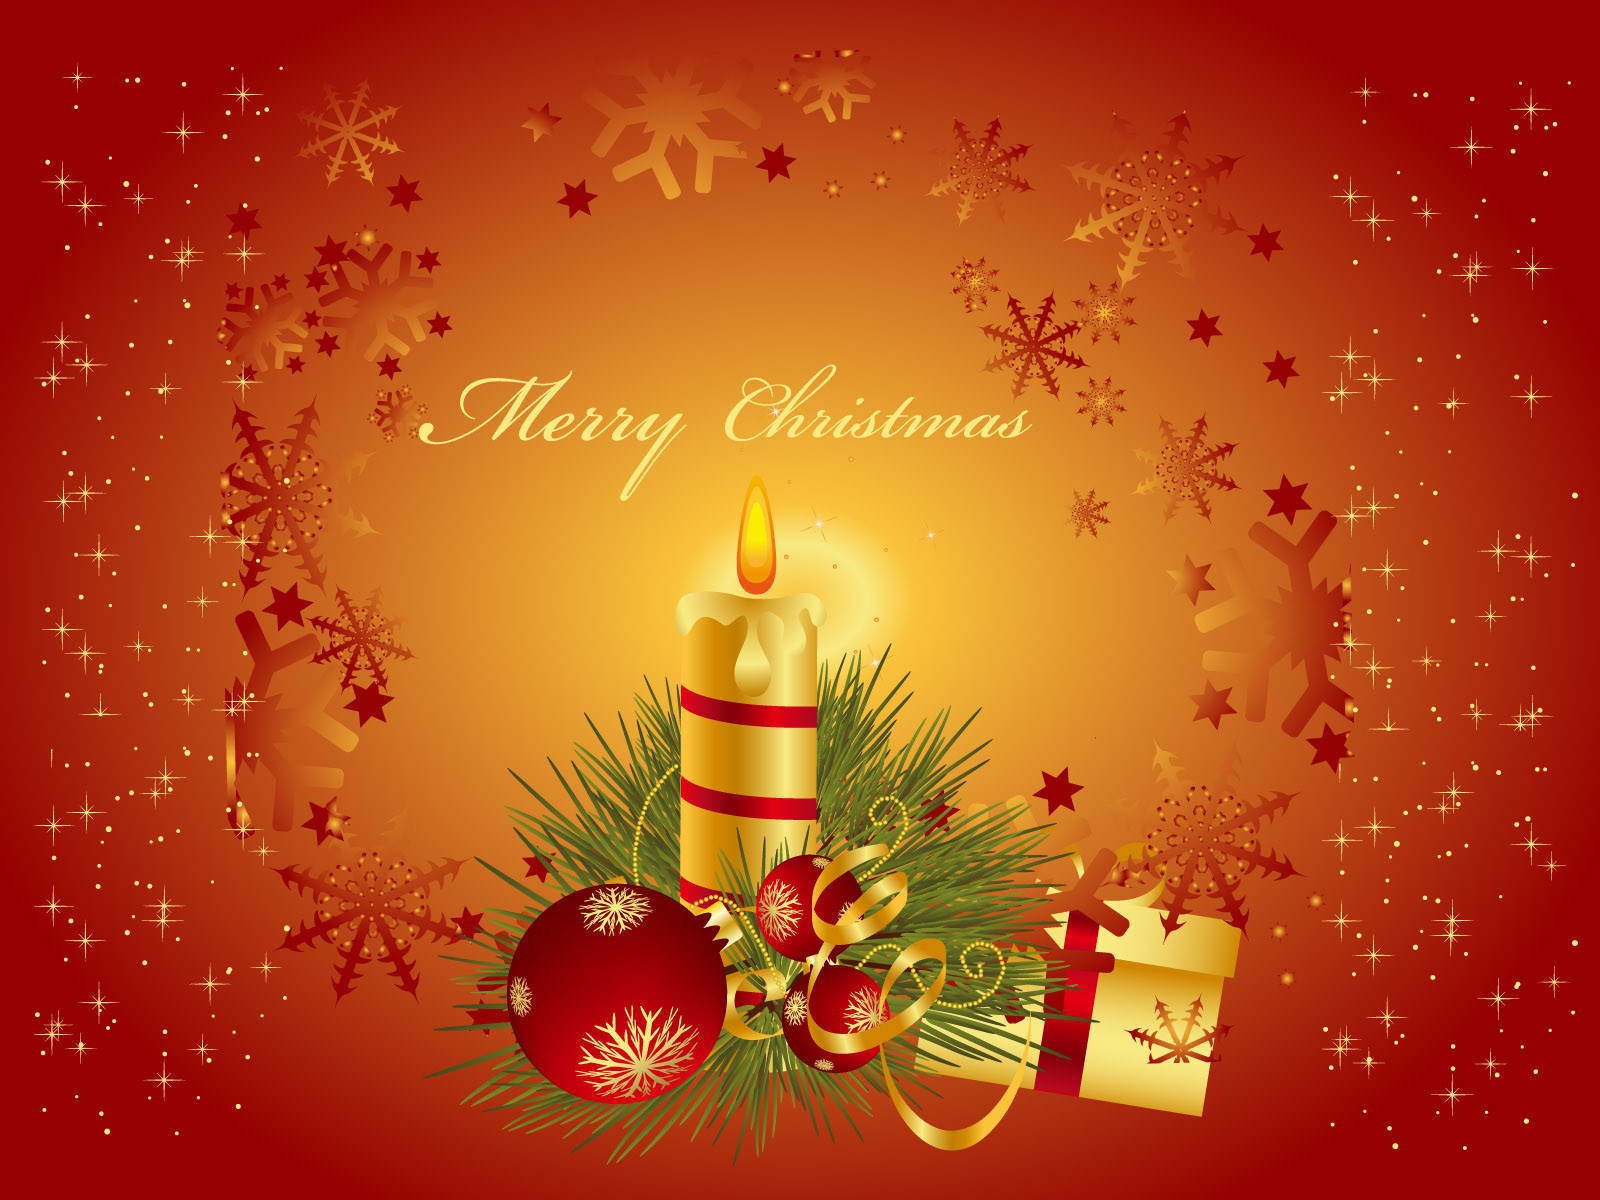 Скачать обои бесплатно Свечи, Рождество (Christmas Xmas), Праздники, Новый Год (New Year) картинка на рабочий стол ПК